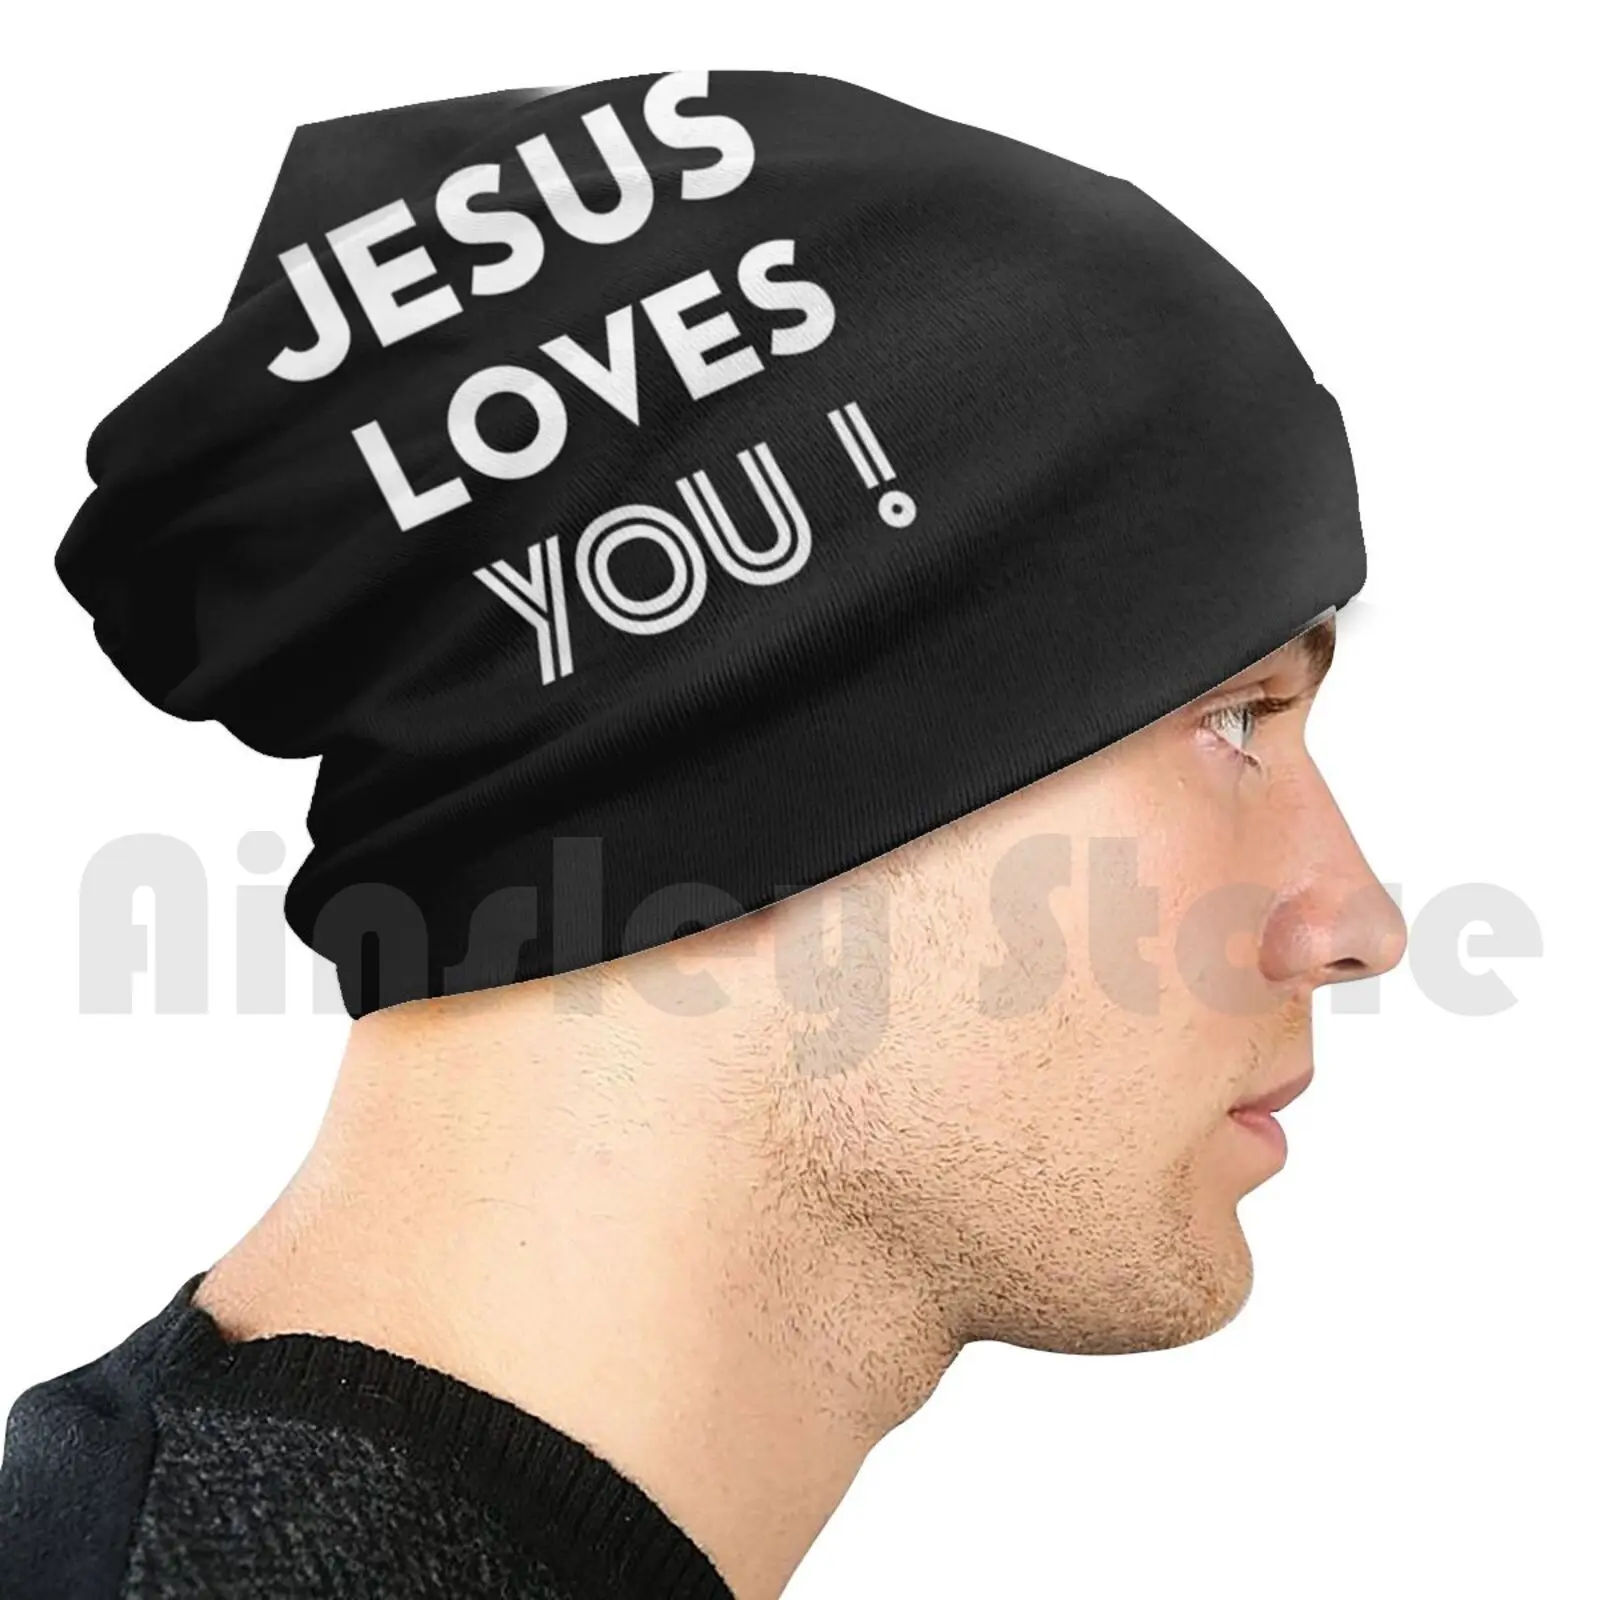 

Шапка-пуловер с Иисусом любит тебя, удобная женская шапочка, Вера, мужество, сила, храбрость, Библия, Бог, религия